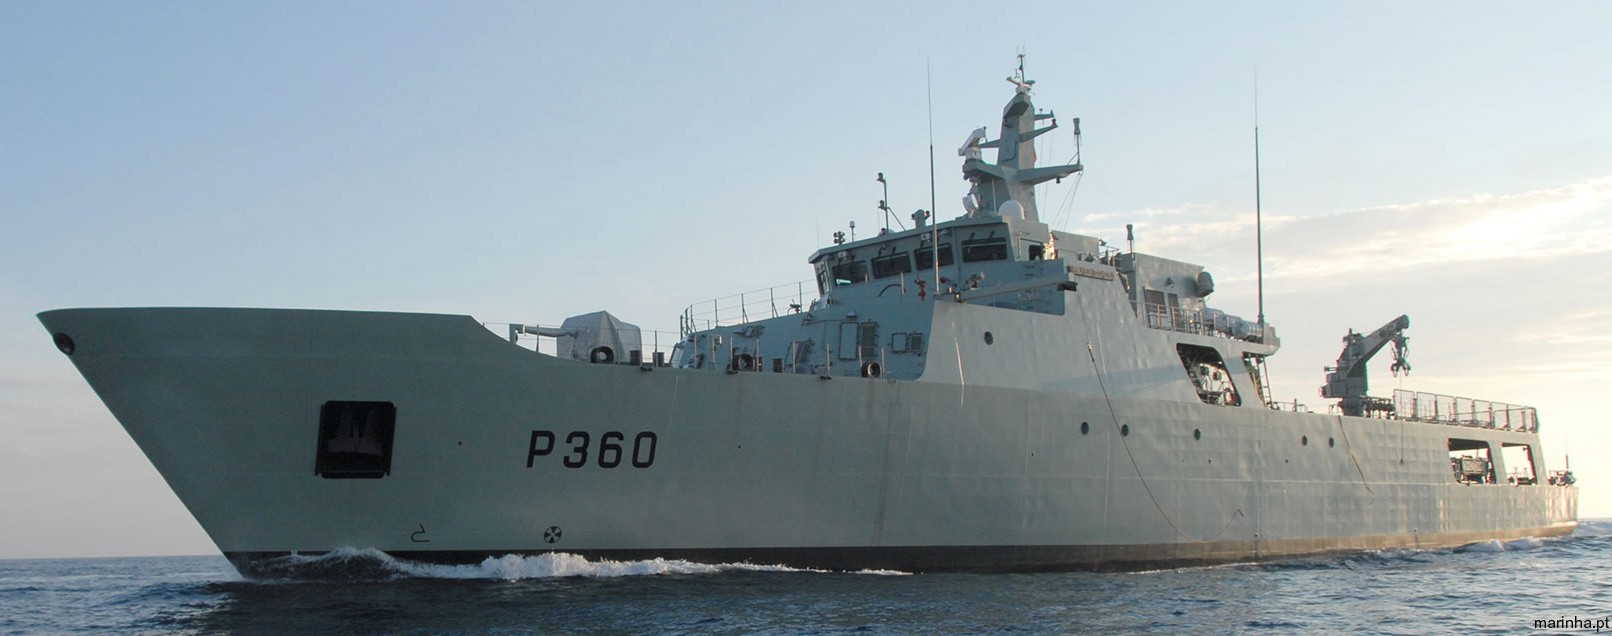 p-360 nrp viana do castelo class offshore patrol vessel opv portuguese navy marinha npo2000 03